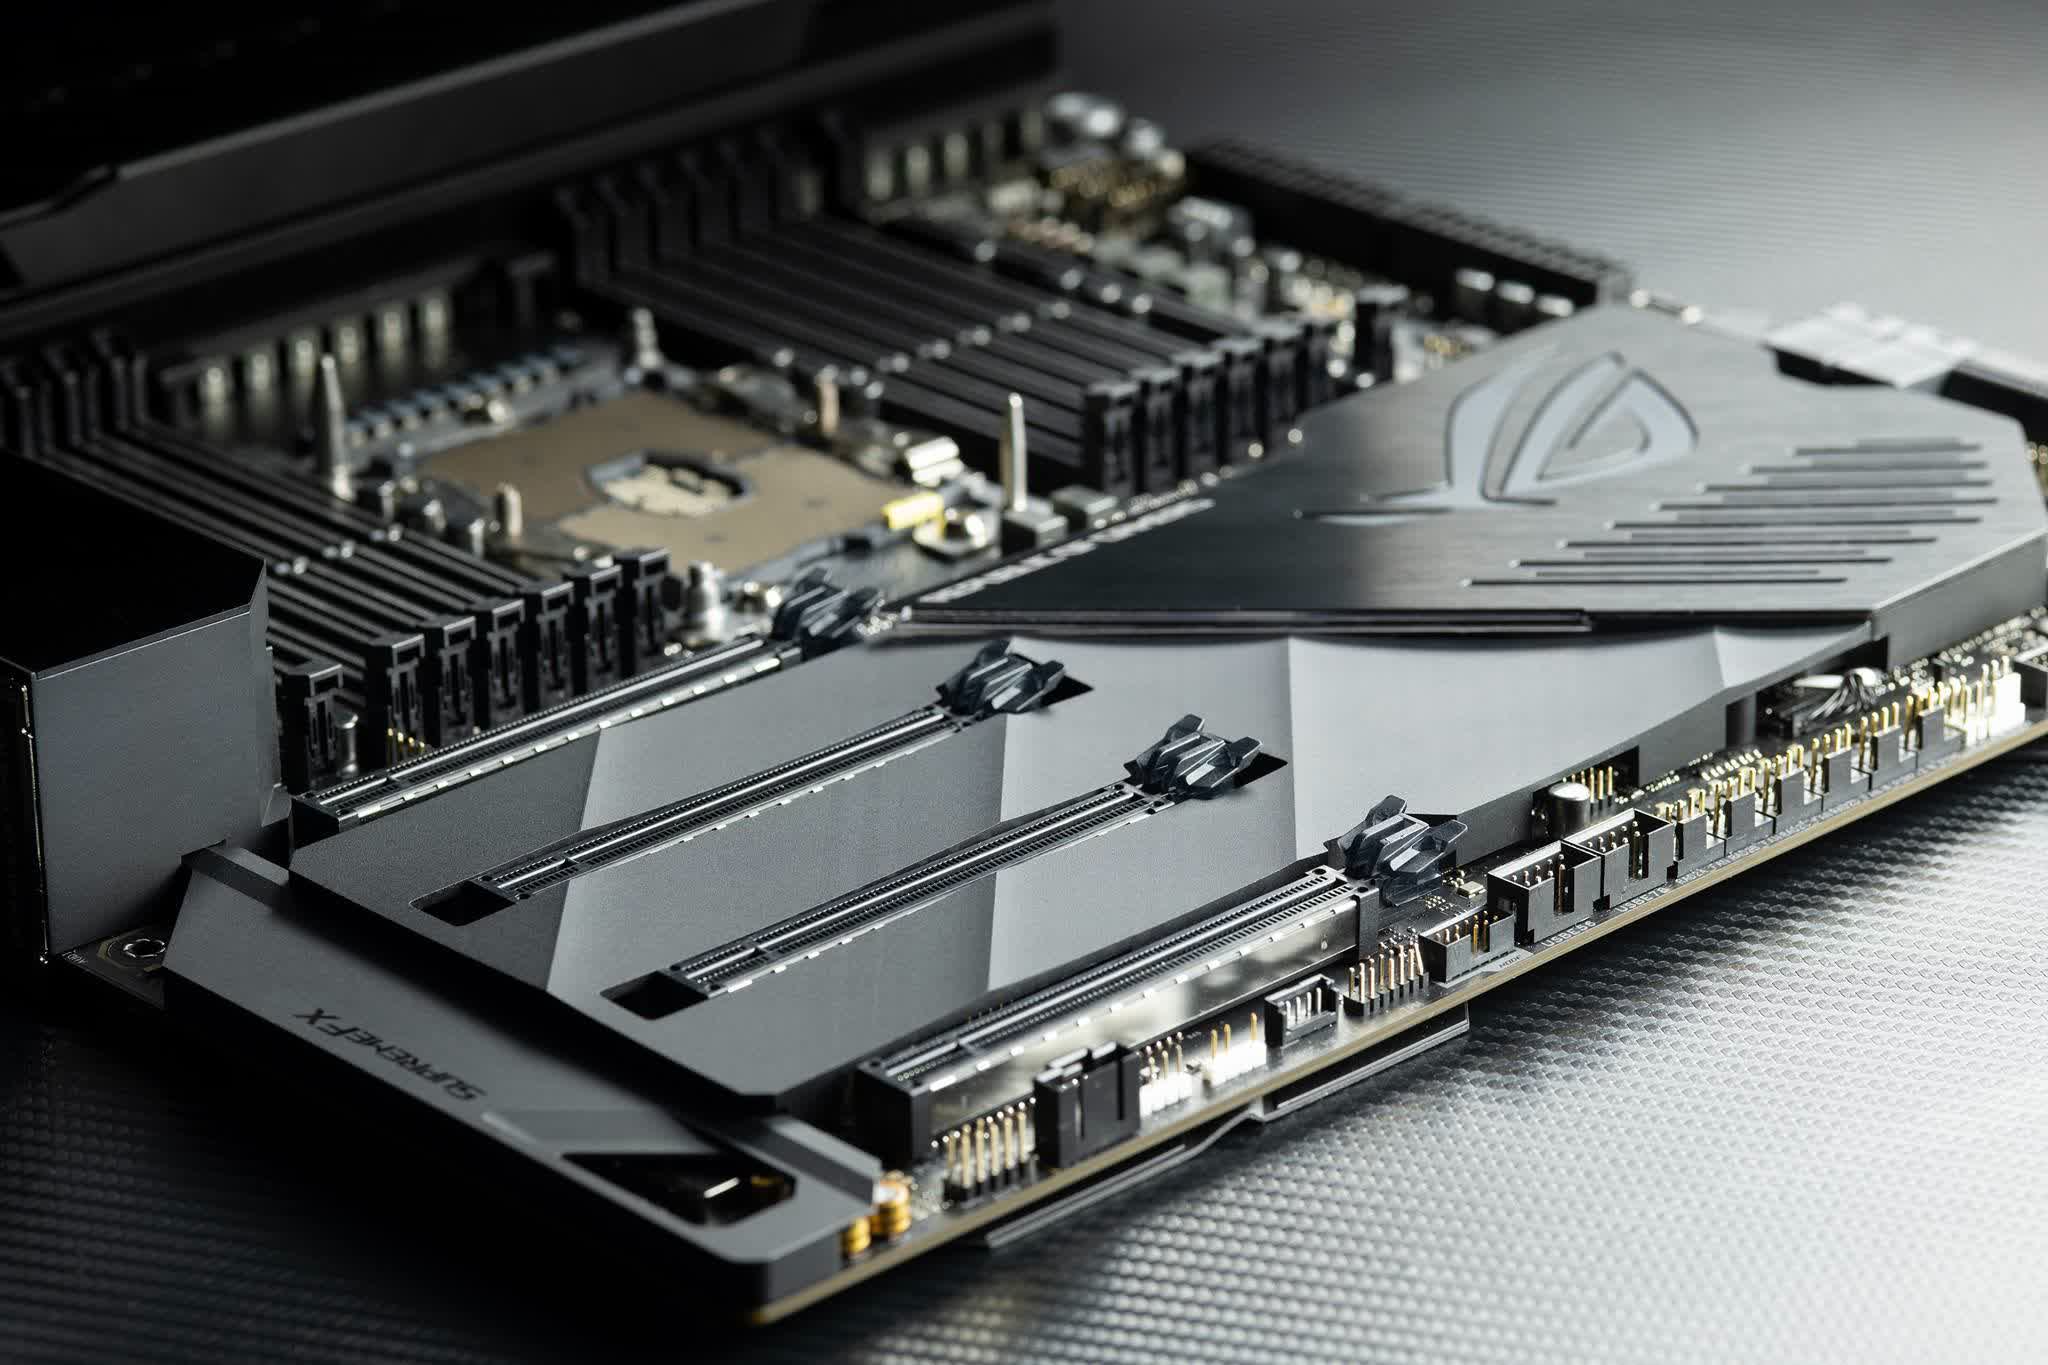 Asus espera aumentos de precios para sus GPU y placas base a principios de 2021